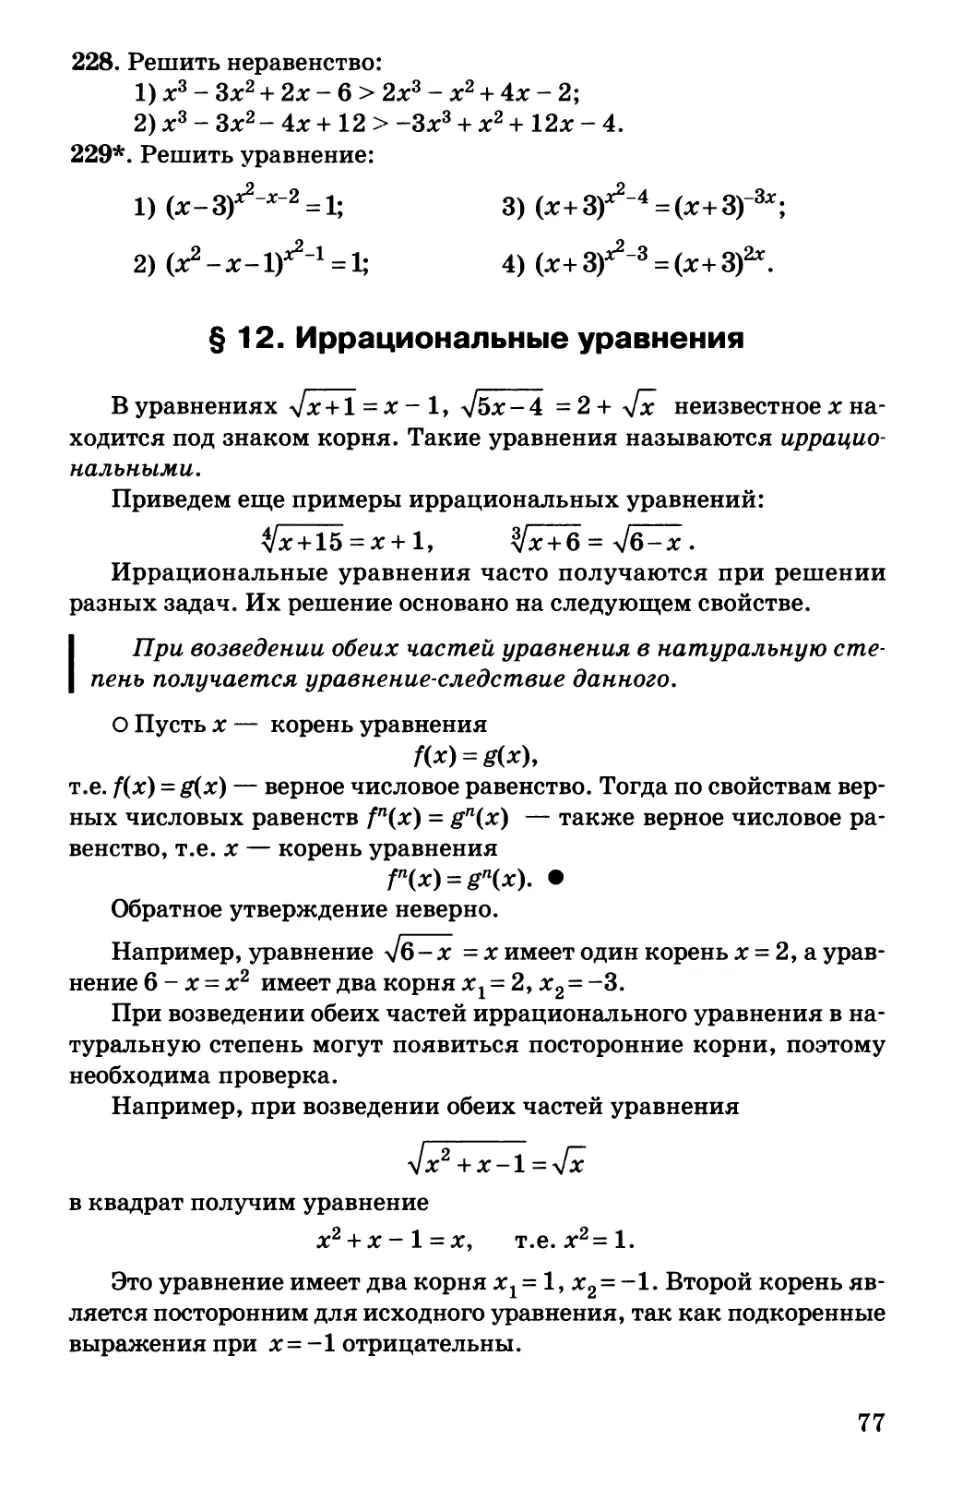 § 12. Иррациональные уравнения